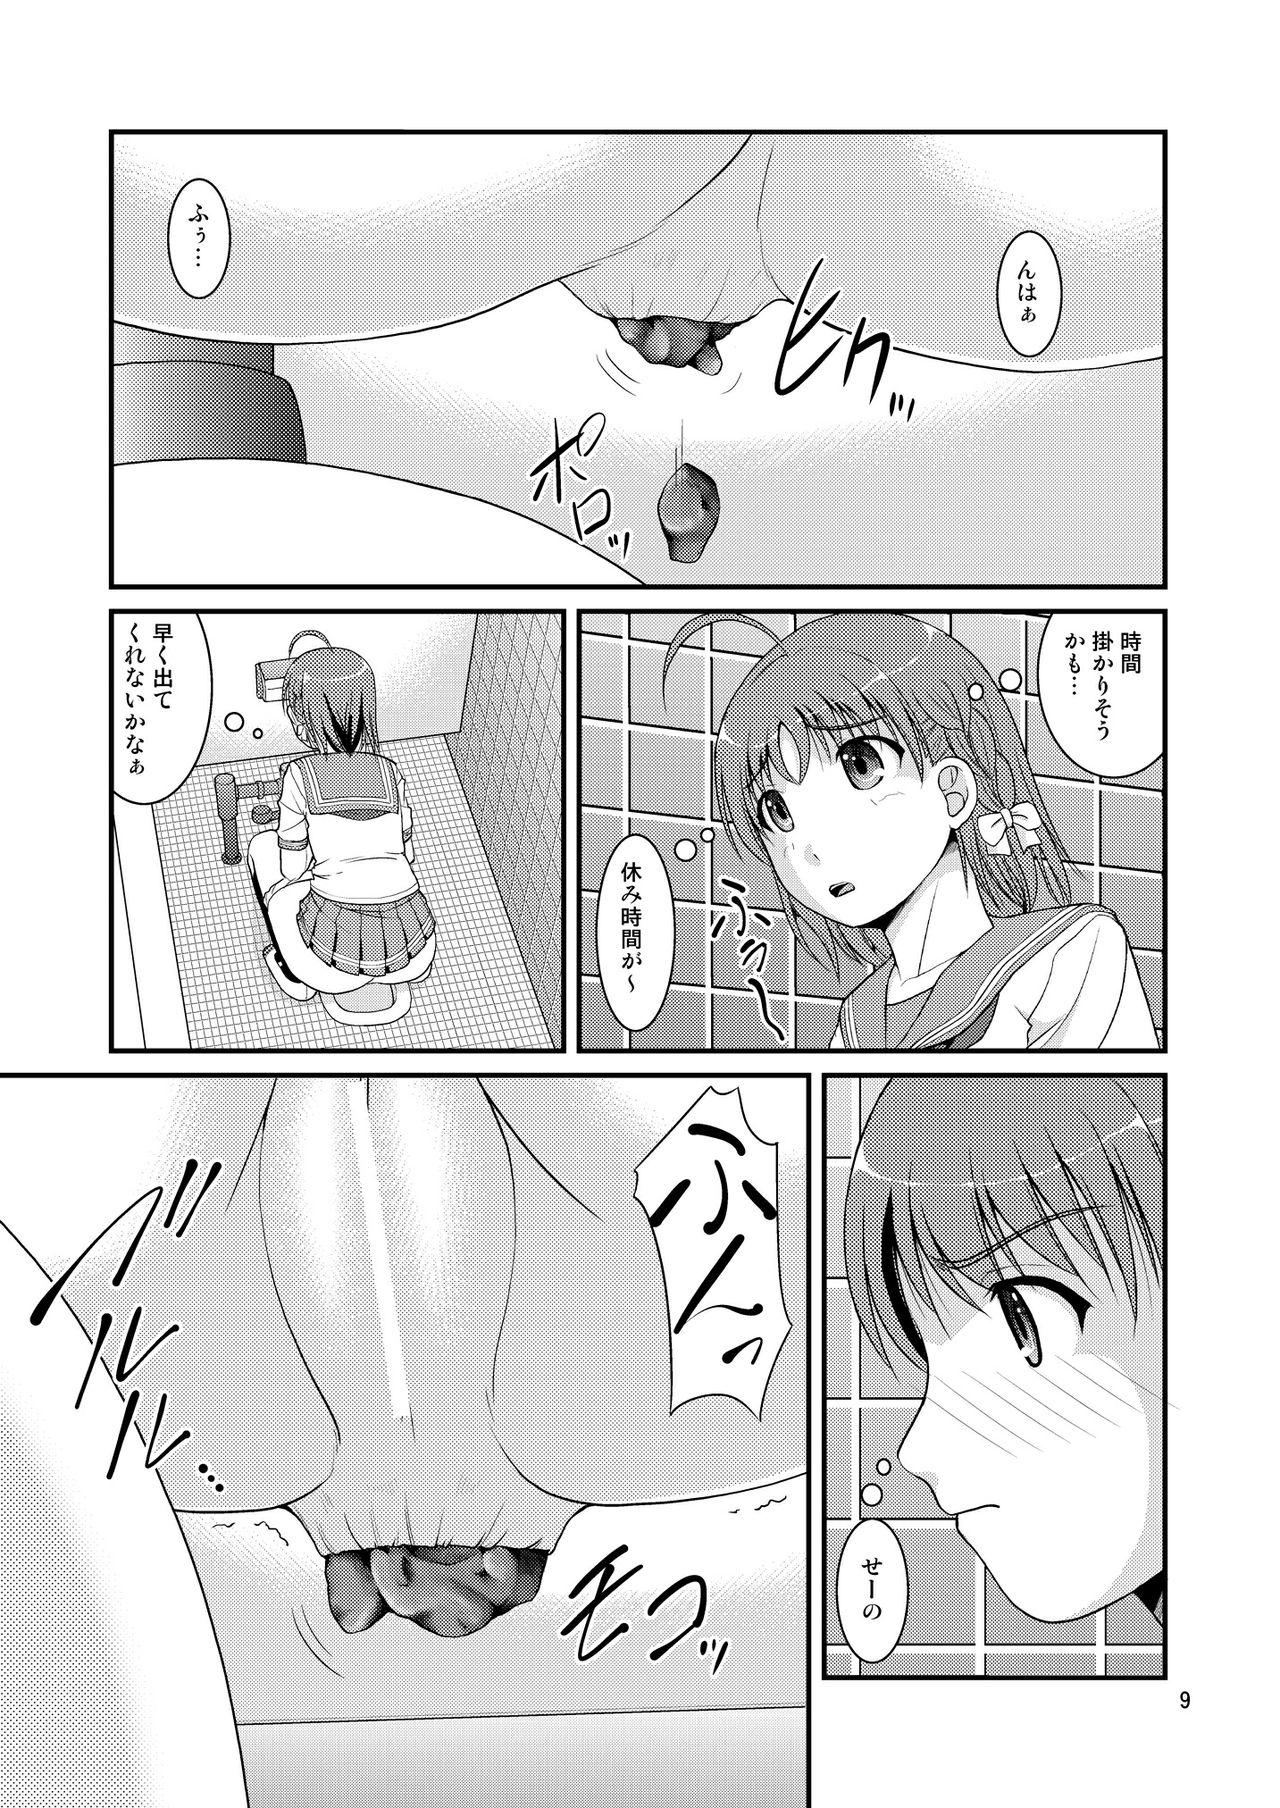 Bou Ninki School Idol Toilet Tousatsu vol. 4 8